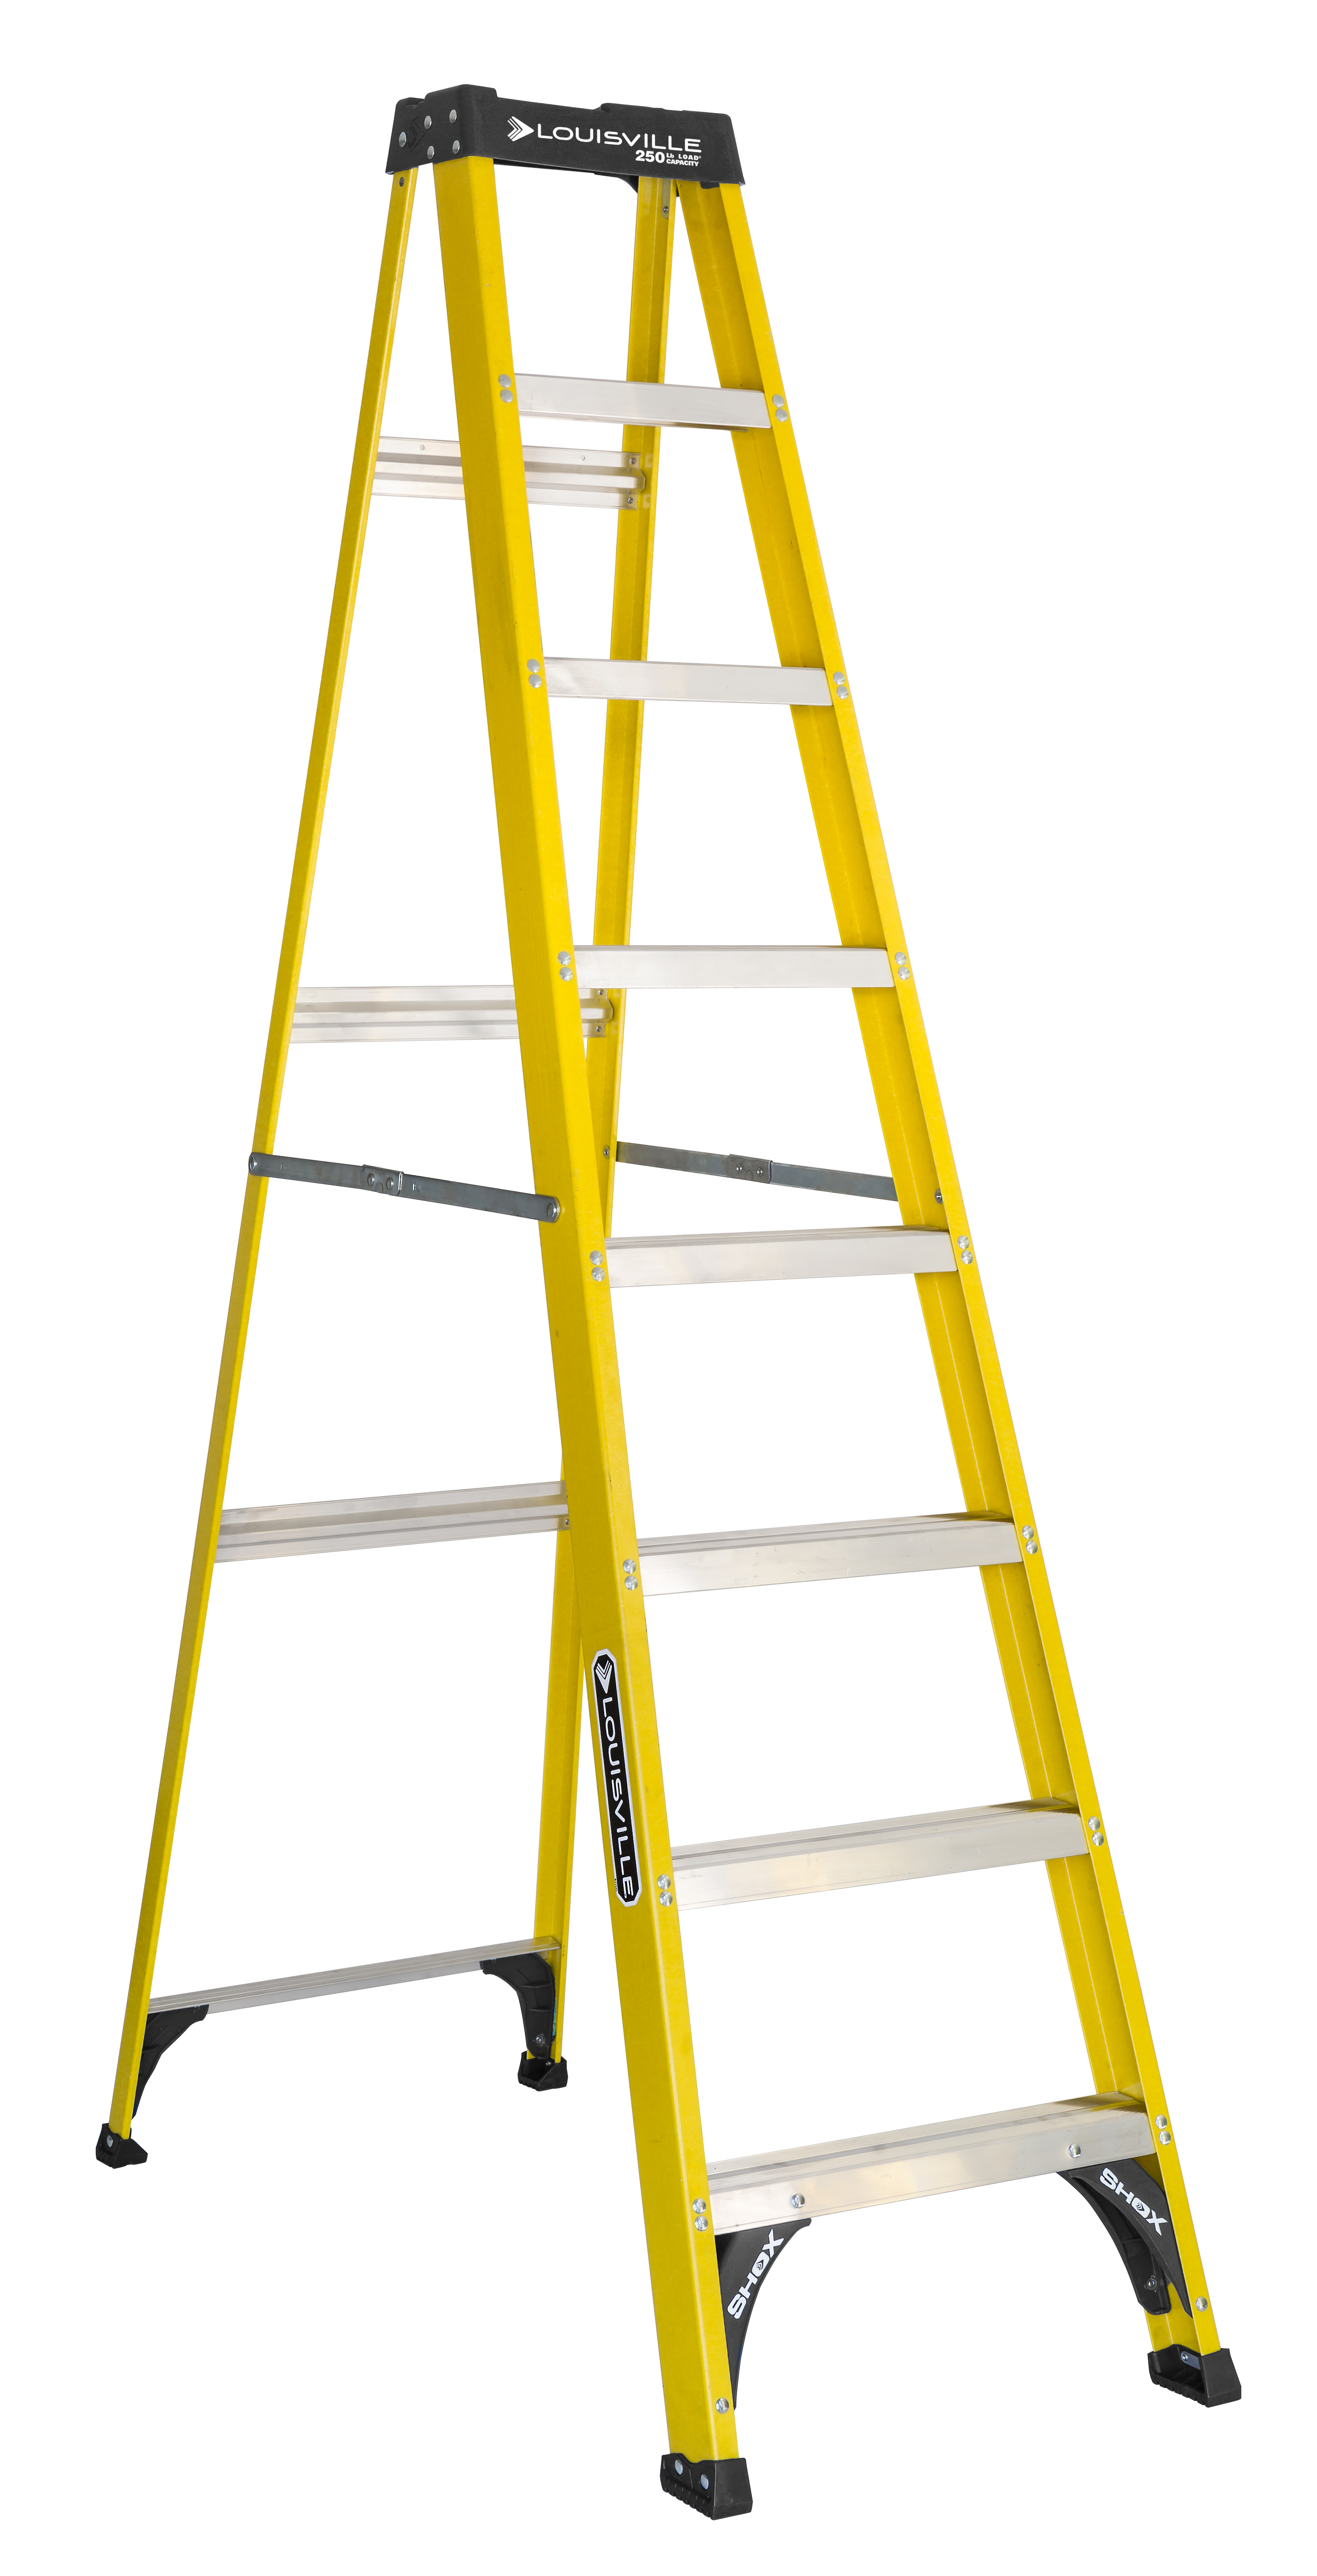 Louisville Ladder 8-foot Fiberglass Step Ladder